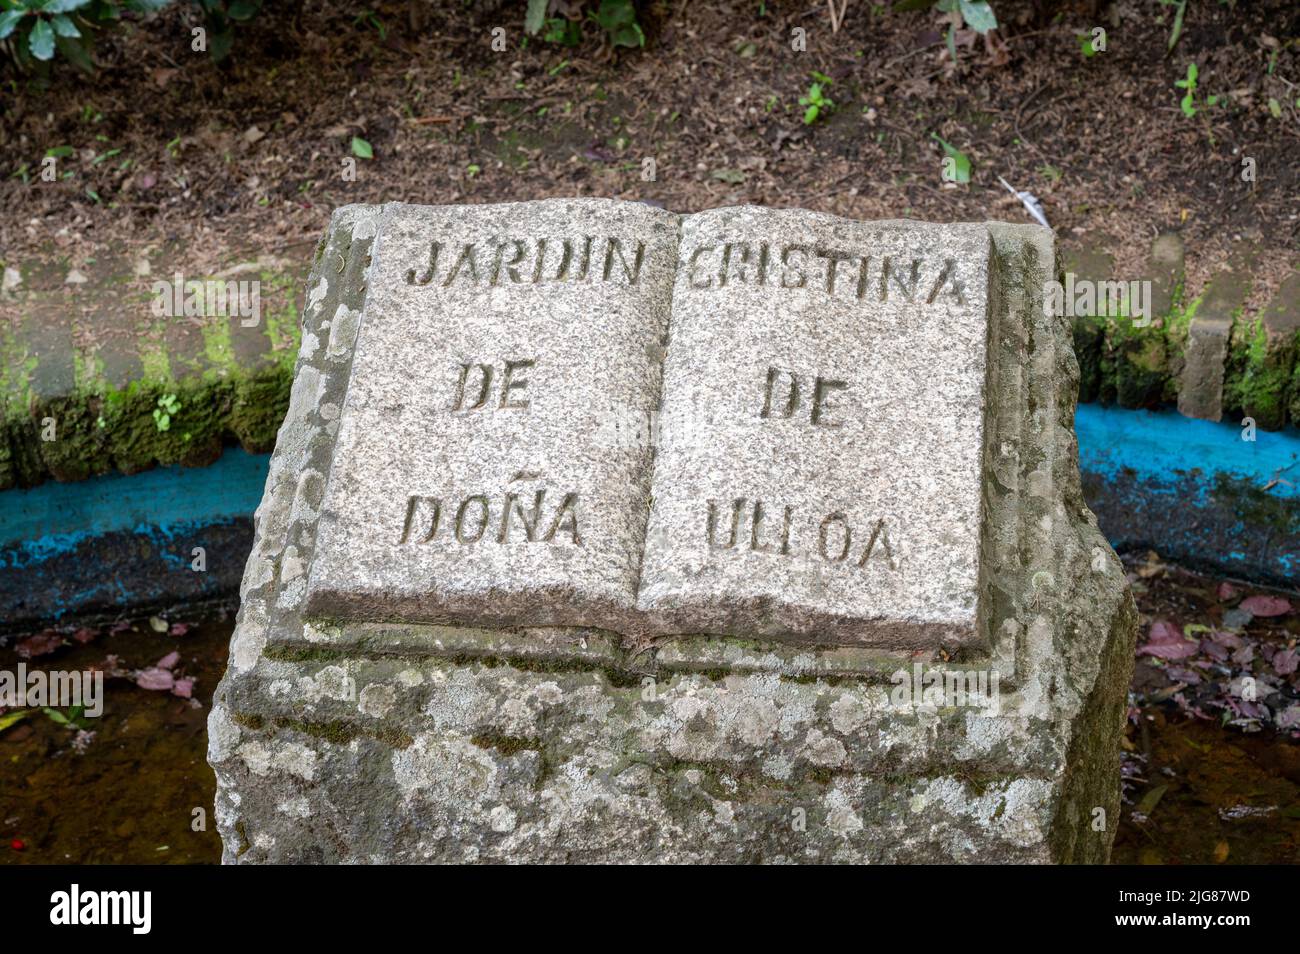 A granite sign in the garden of Christina de Dona Ulloa, or Jardin Cristina de dona Ulloa Caceres Spain Stock Photo